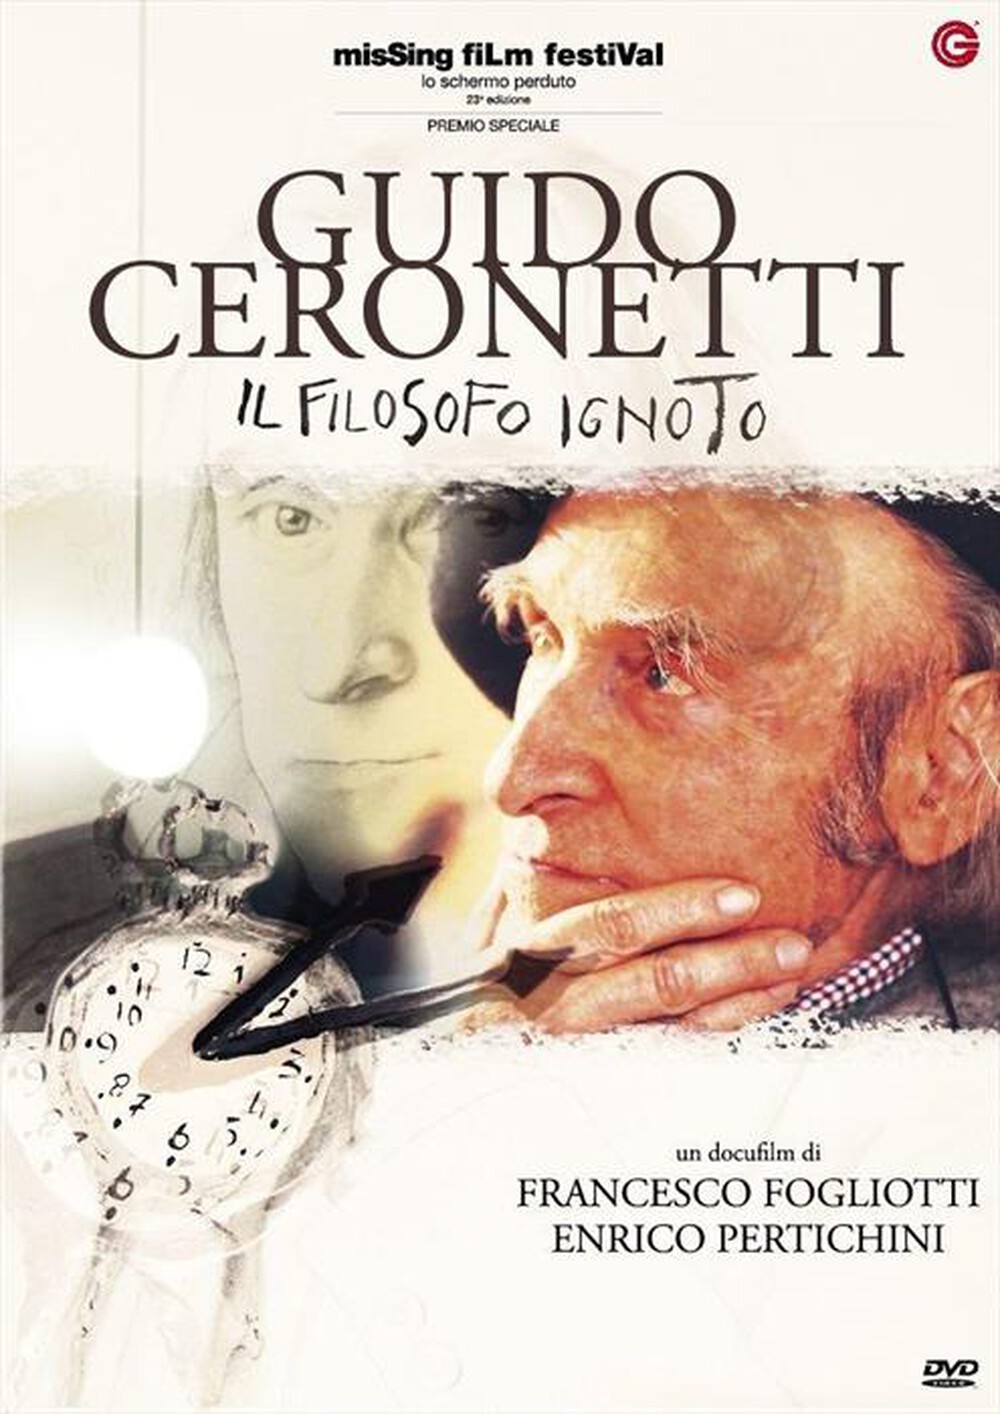 "CECCHI GORI - Guido Ceronetti Il Filosofo Ignoto"